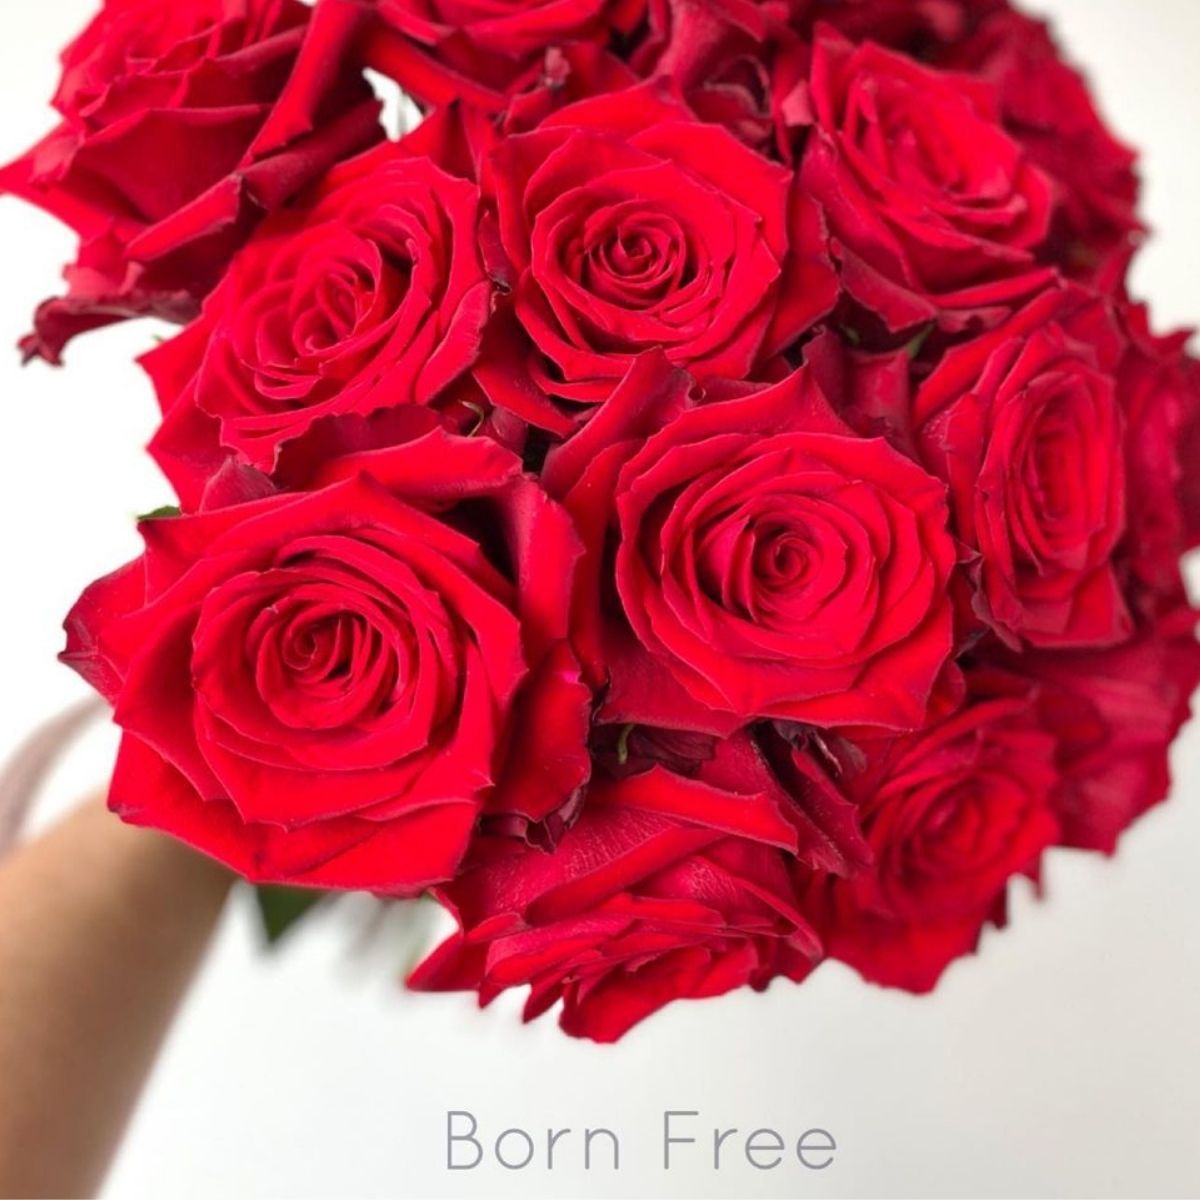 Born Free roses - De Ruiter - on Thursd LGBTQ